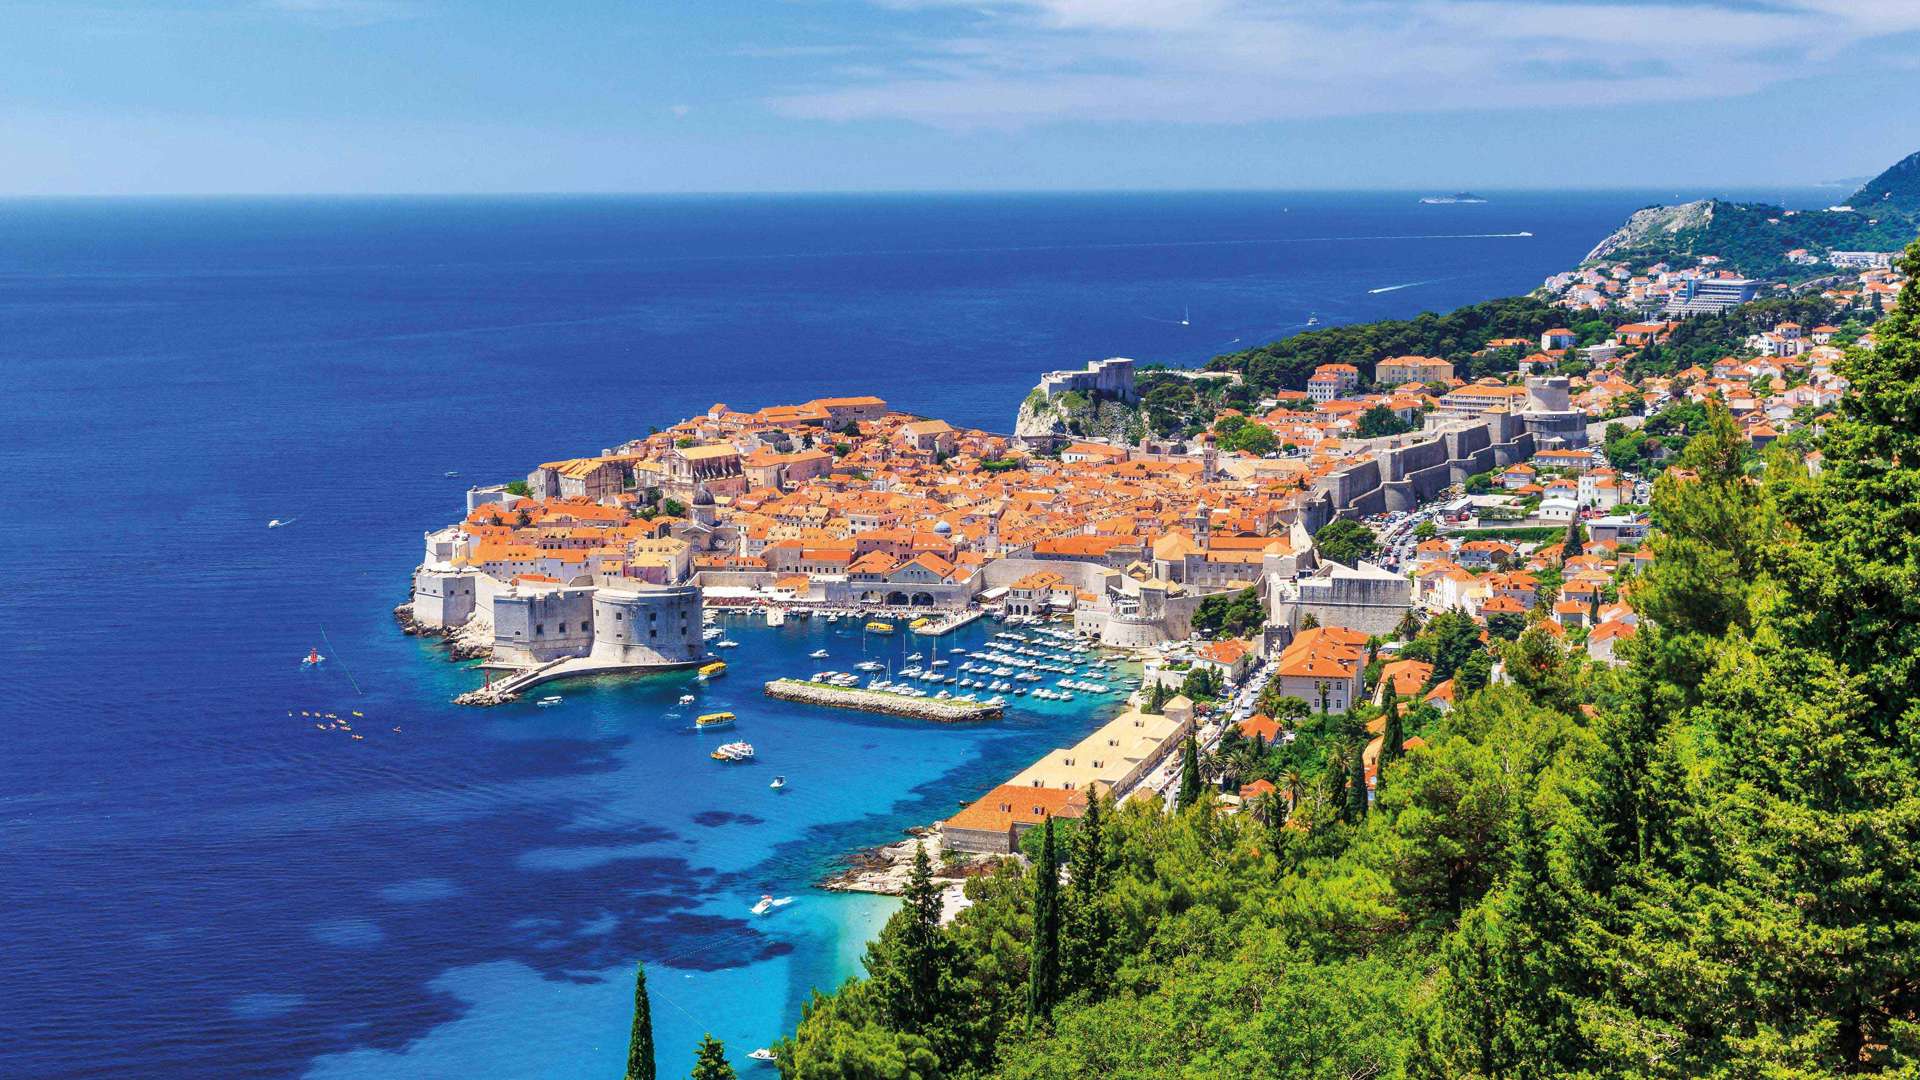 Panoramic View Of Old Town, Dubrovnik, Croatia 